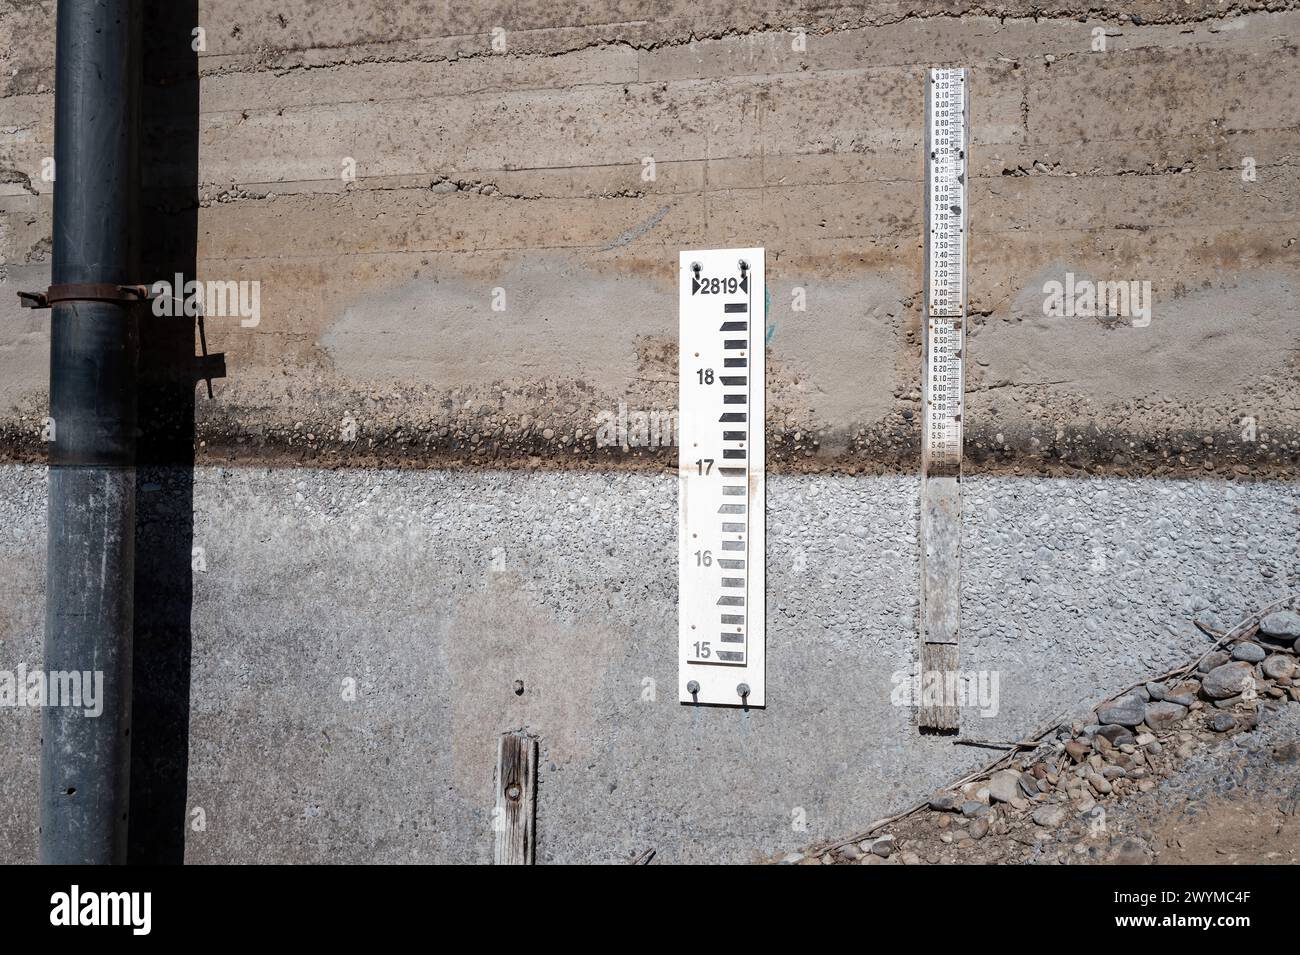 Les jauges du barrage de ciment indiquent le niveau d'eau Banque D'Images